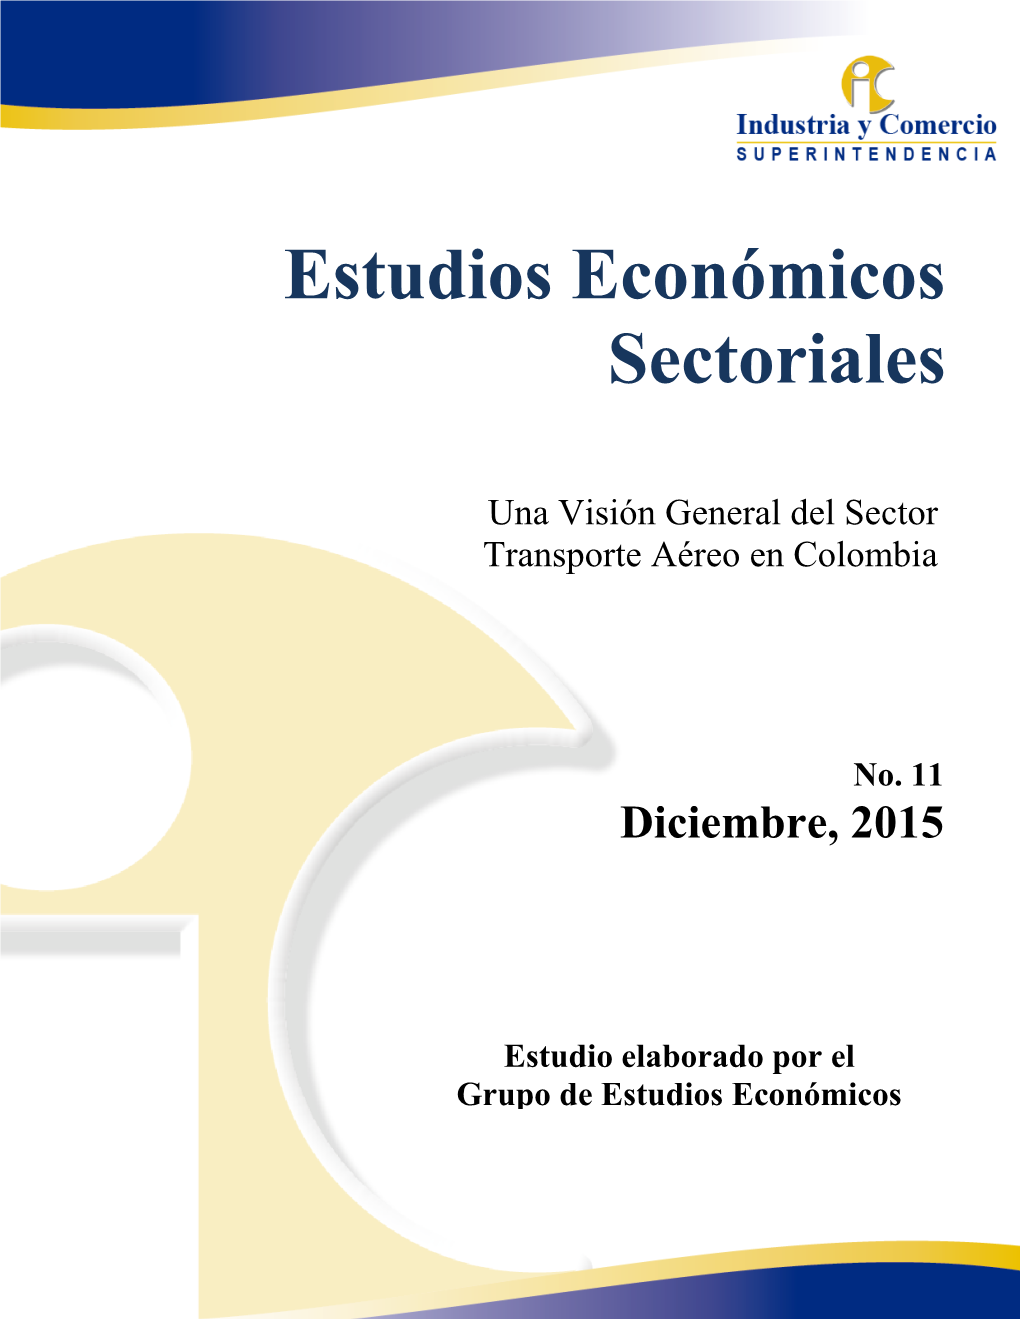 Estudios Económicos Sectoriales